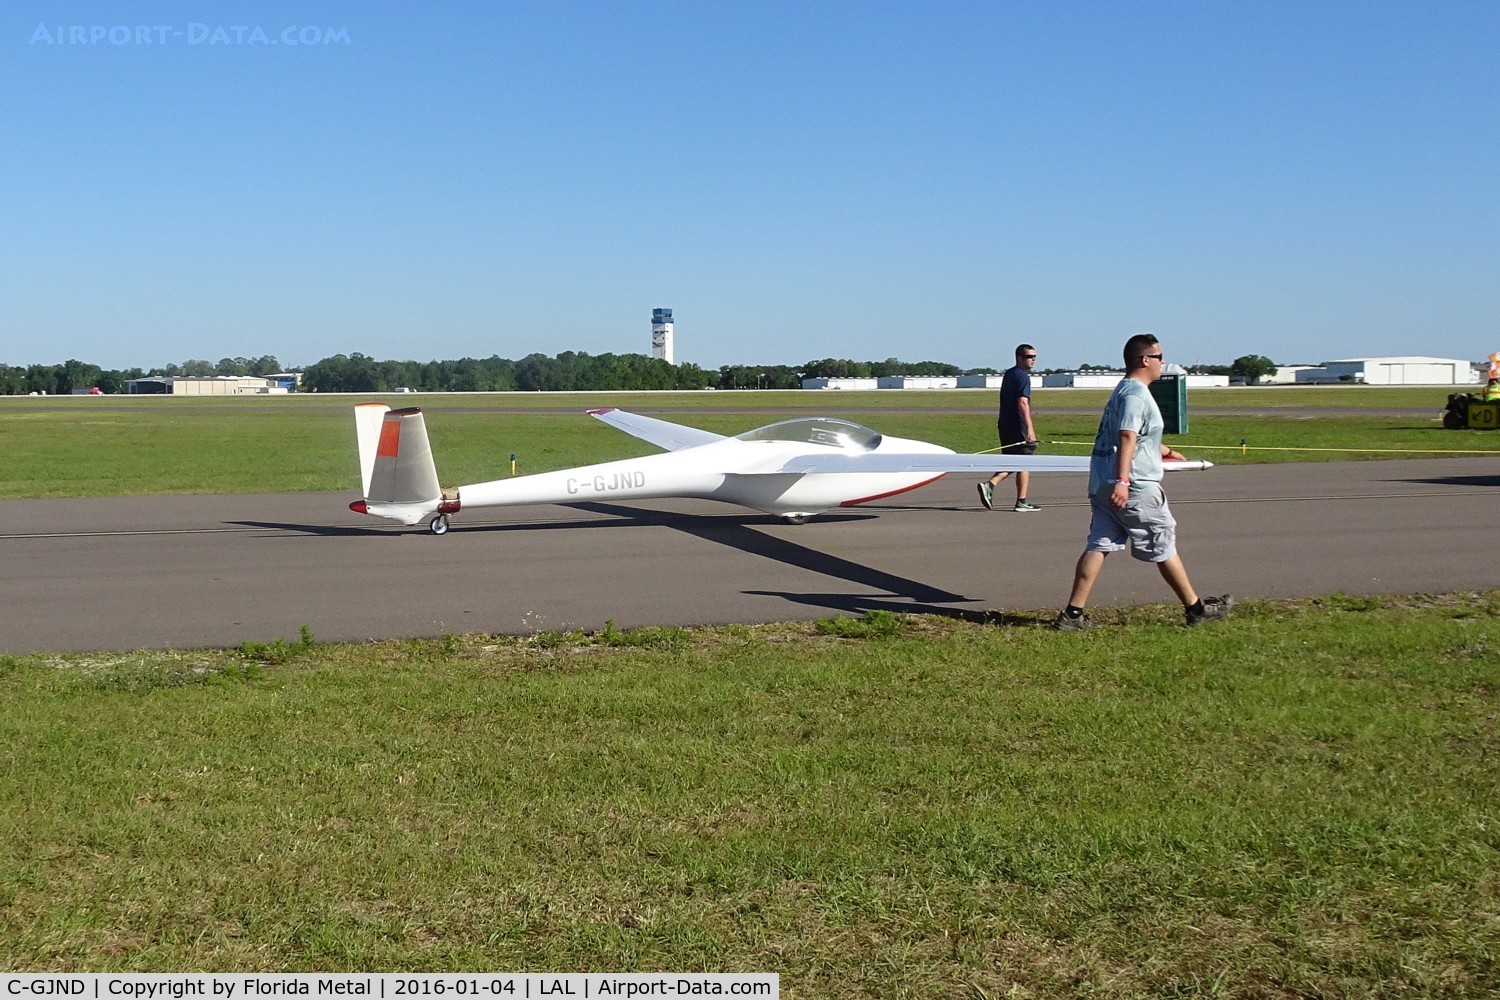 C-GJND, 1973 Start & Flug H101 Salto C/N 23, Glider flown by Manfred Radius for his routine